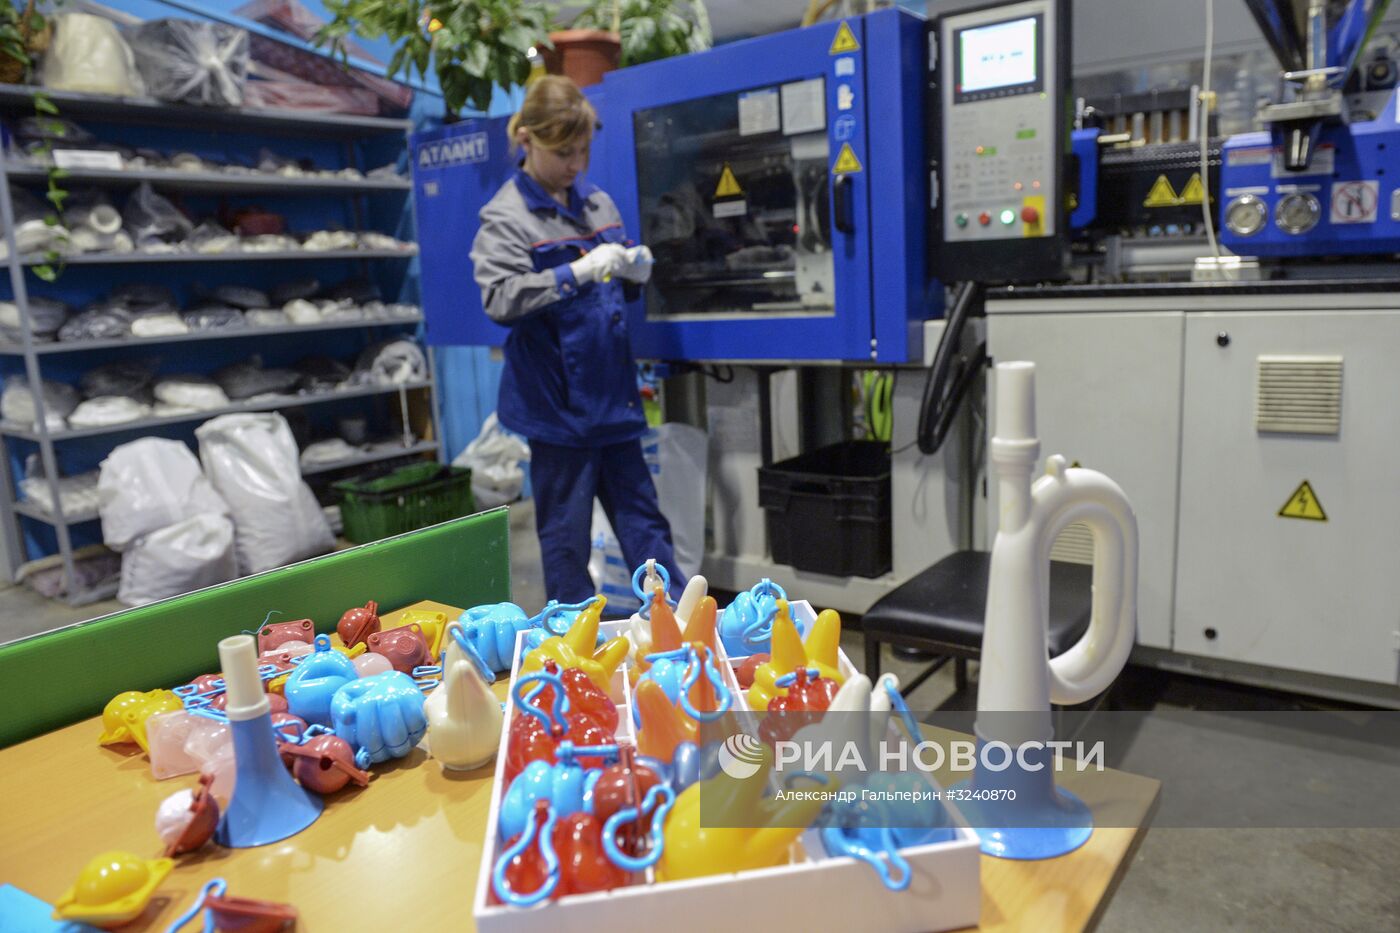 Завод по переработке пластмасс имени "Комсомольской правды" в Санкт-Петербурге